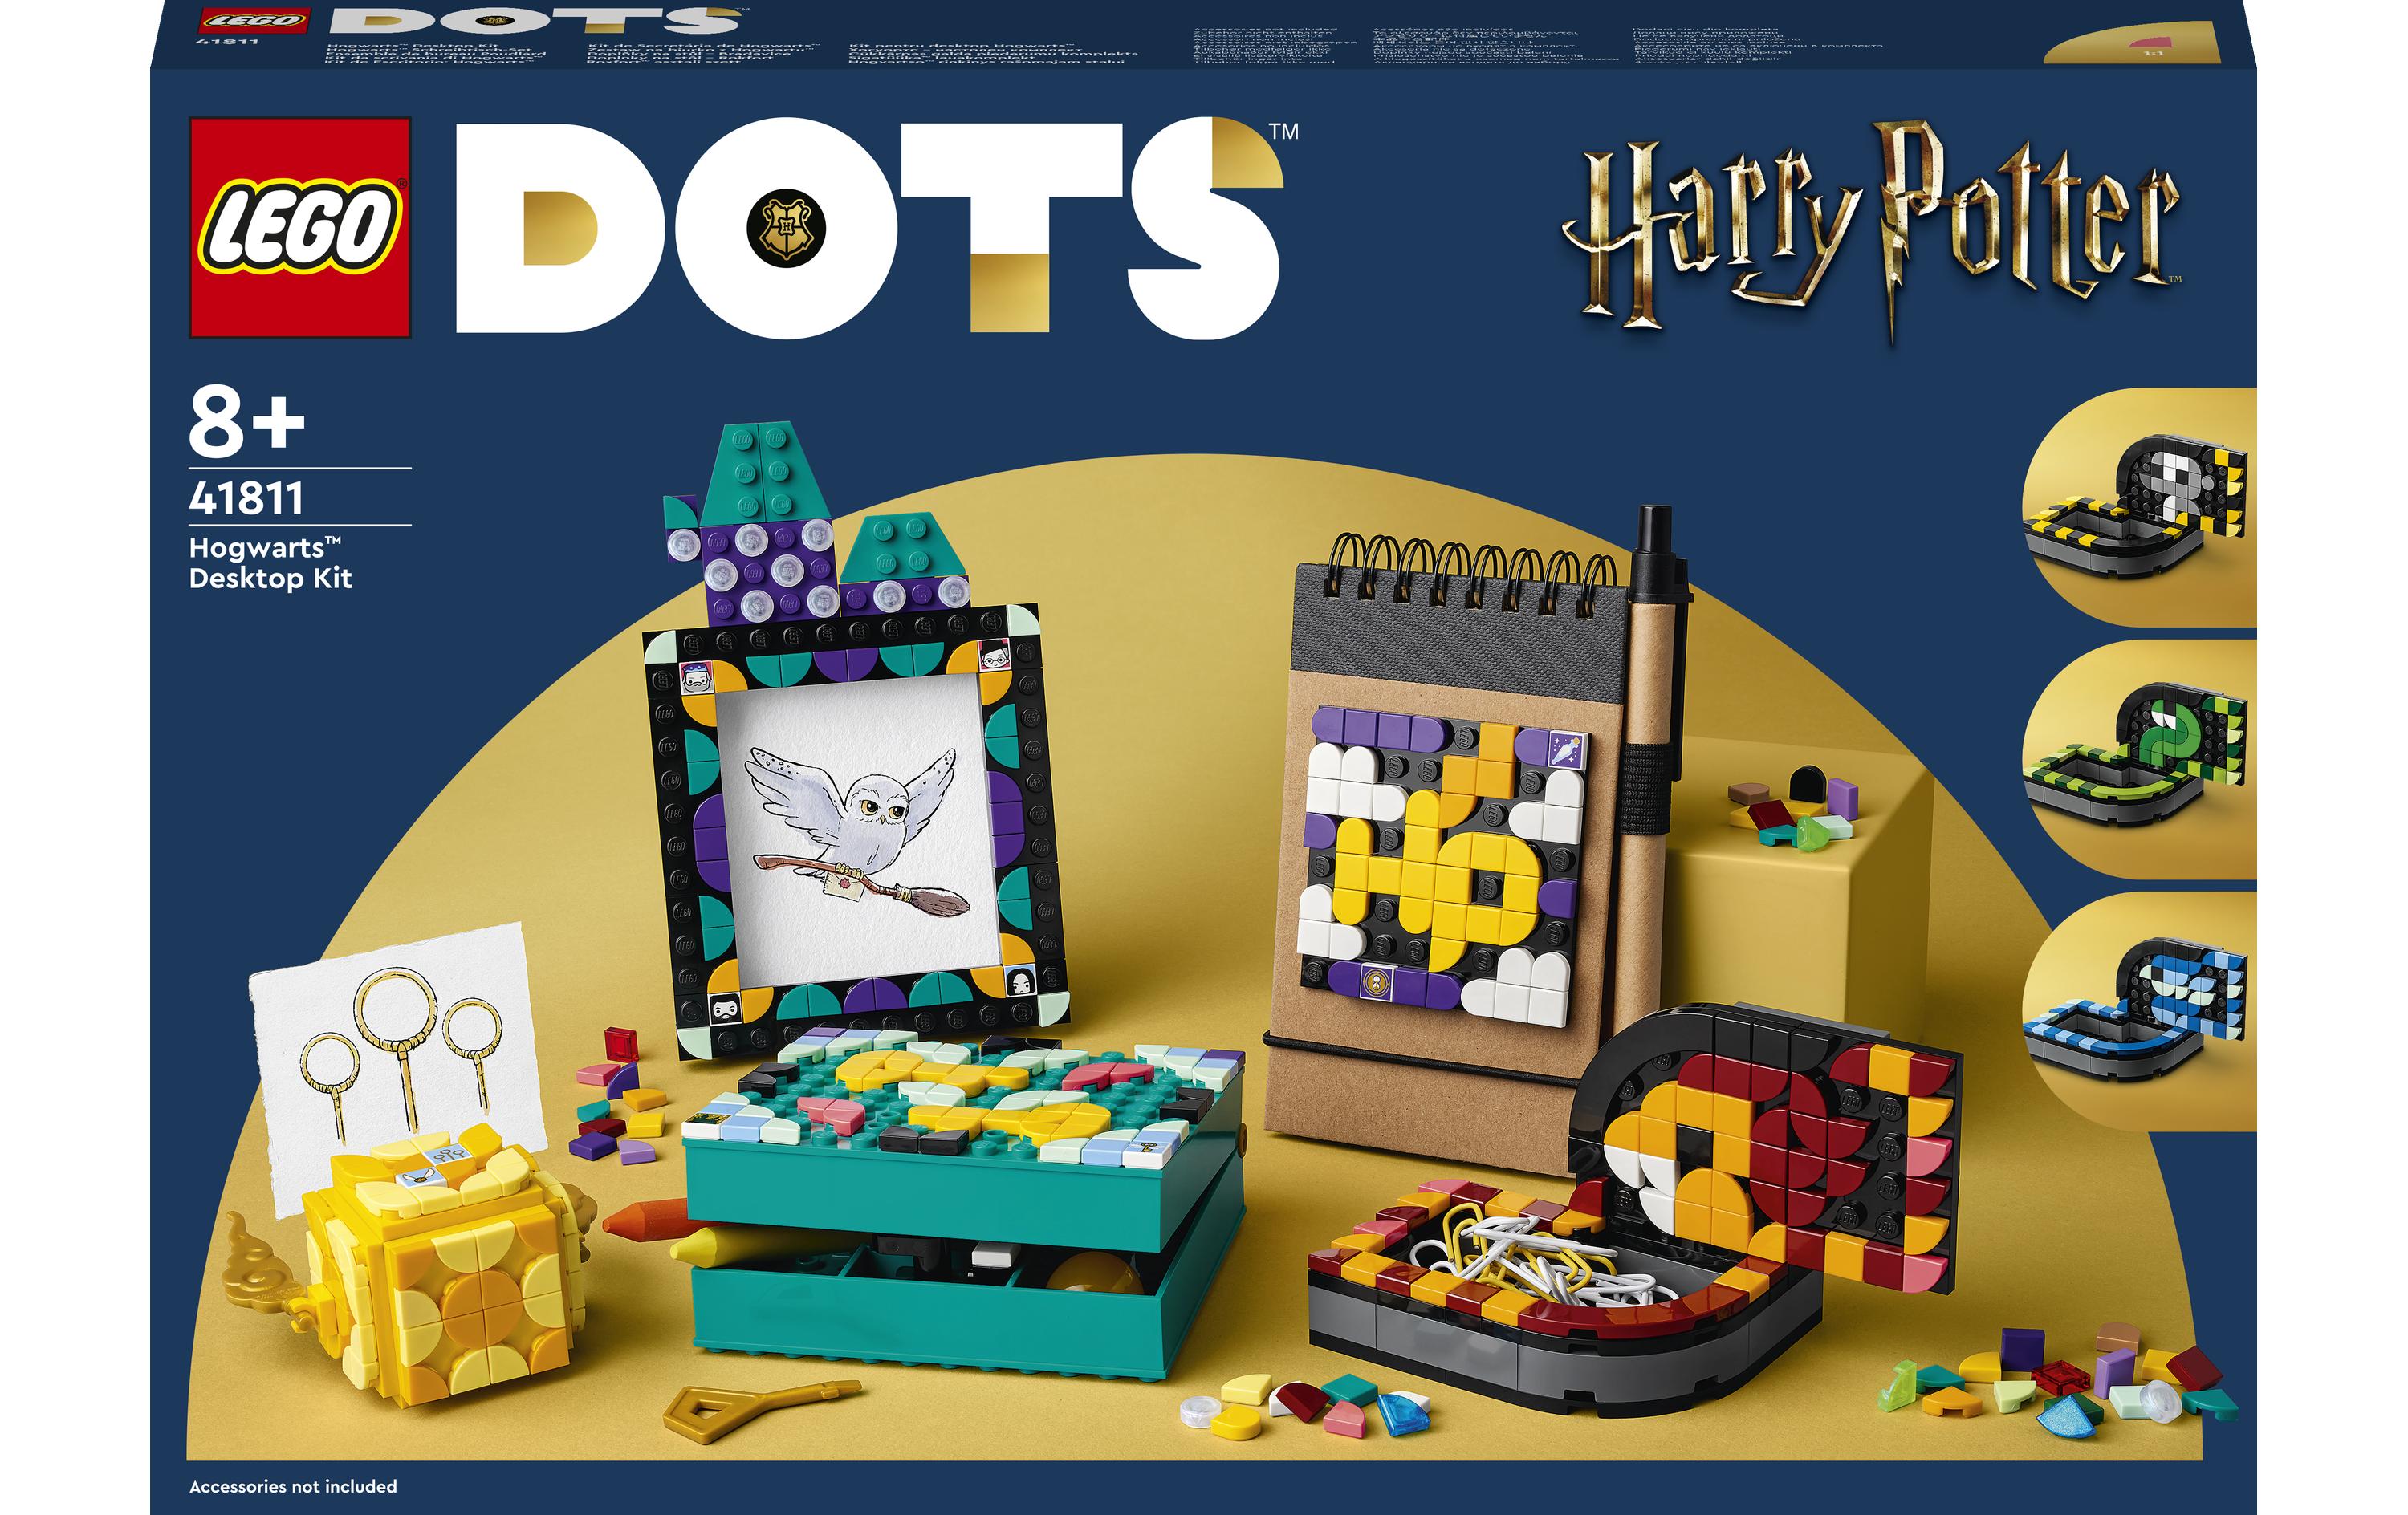 LEGO® DOTS Hogwarts Schreibtisch-Set 41811 - im GOLDSTIEN.SHOP verfügbar mit Gratisversand ab Schweizer Lager! (5702017425115)